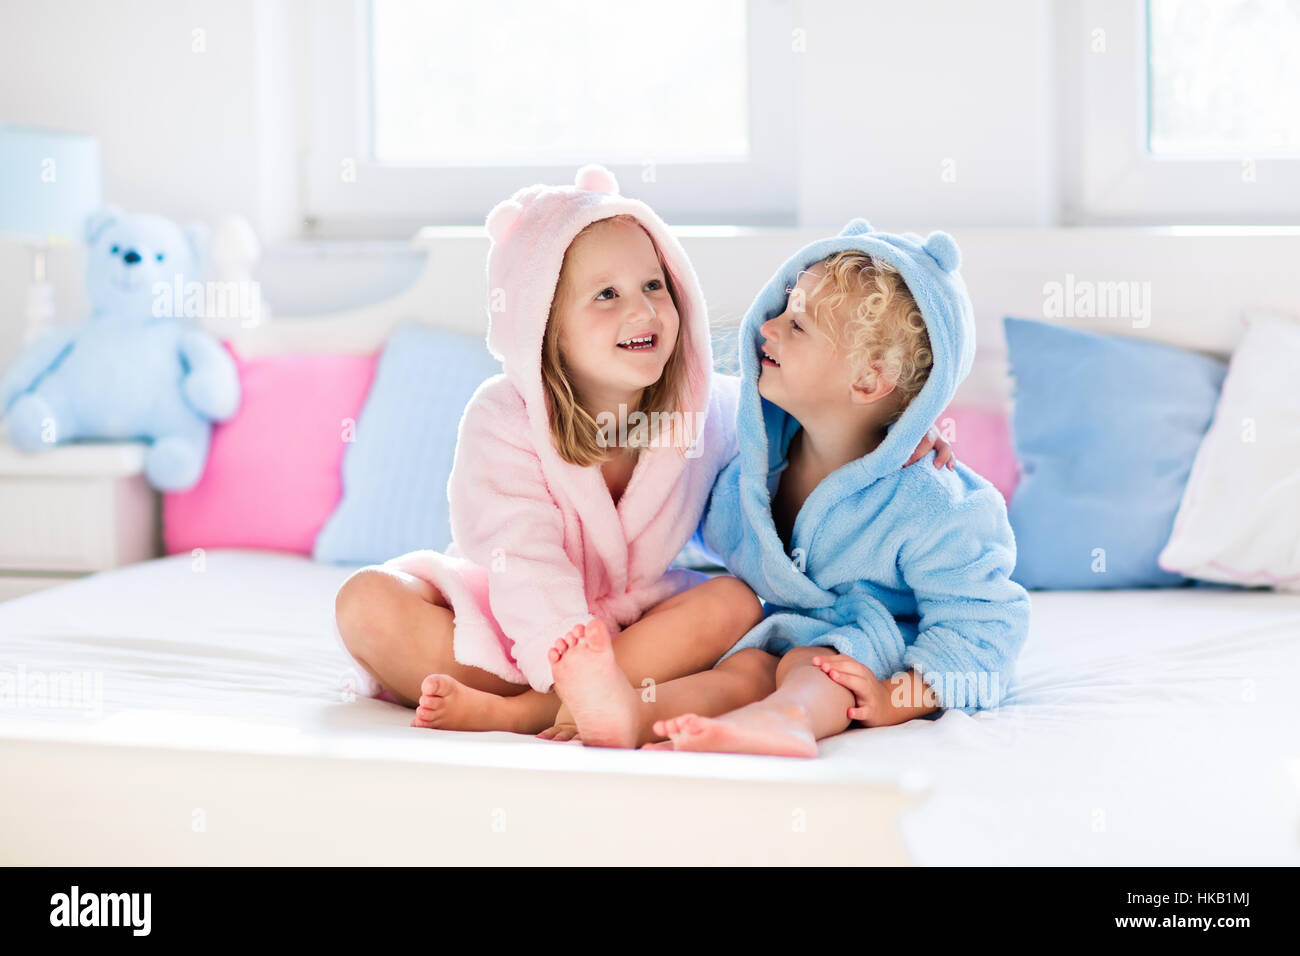 Feliz riendo los niños, niño y niña en suave albornoz después baño juego de cama de color blanco con azul y rosa almohadas en la soleada habitación Fotografía de stock -